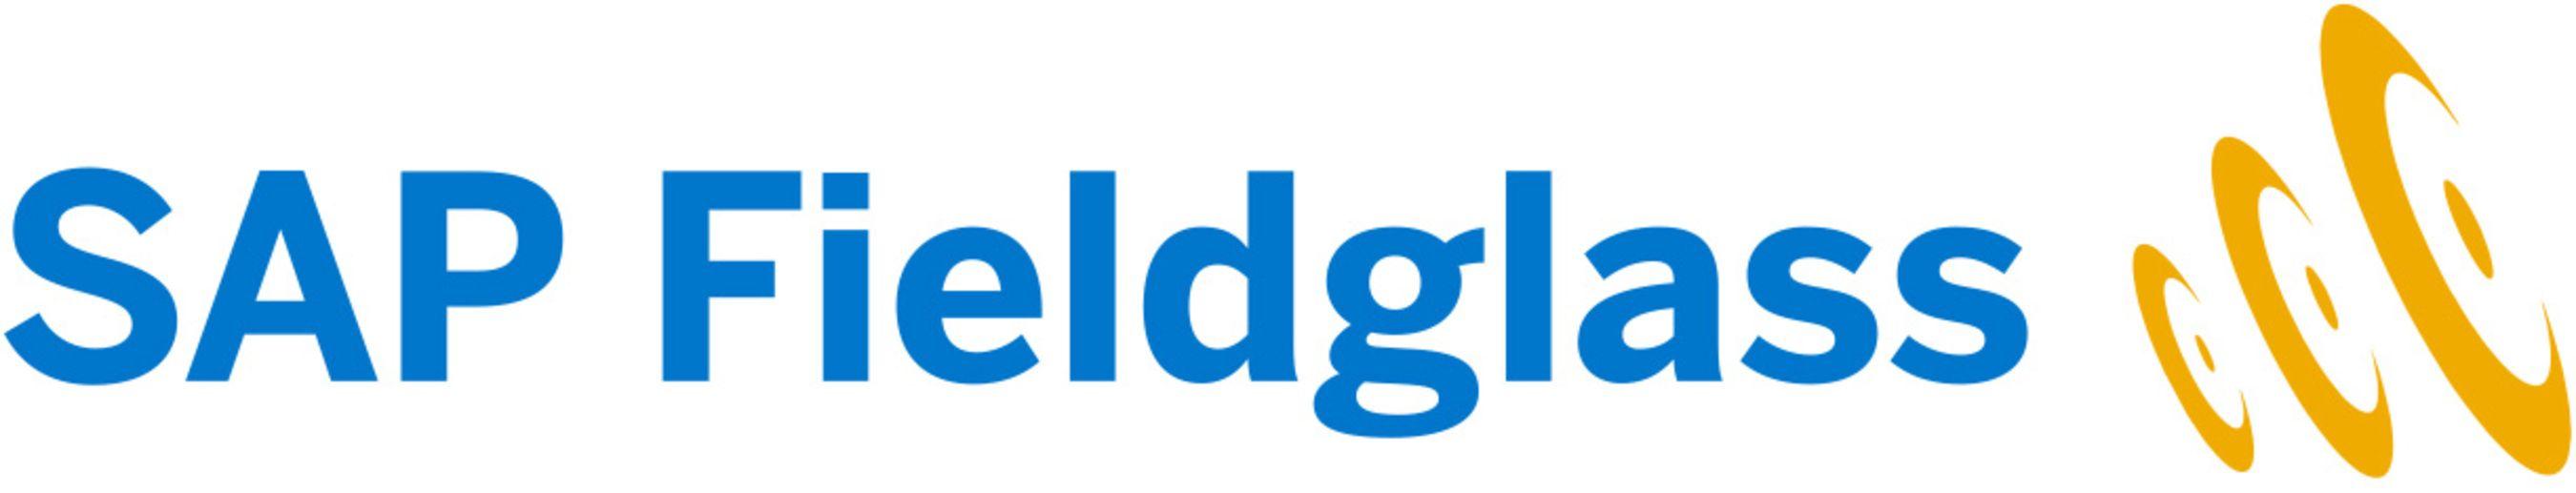 Fieldglass Logo - Ardent Partners, SAP Fieldglass Study: Vendor Management Systems